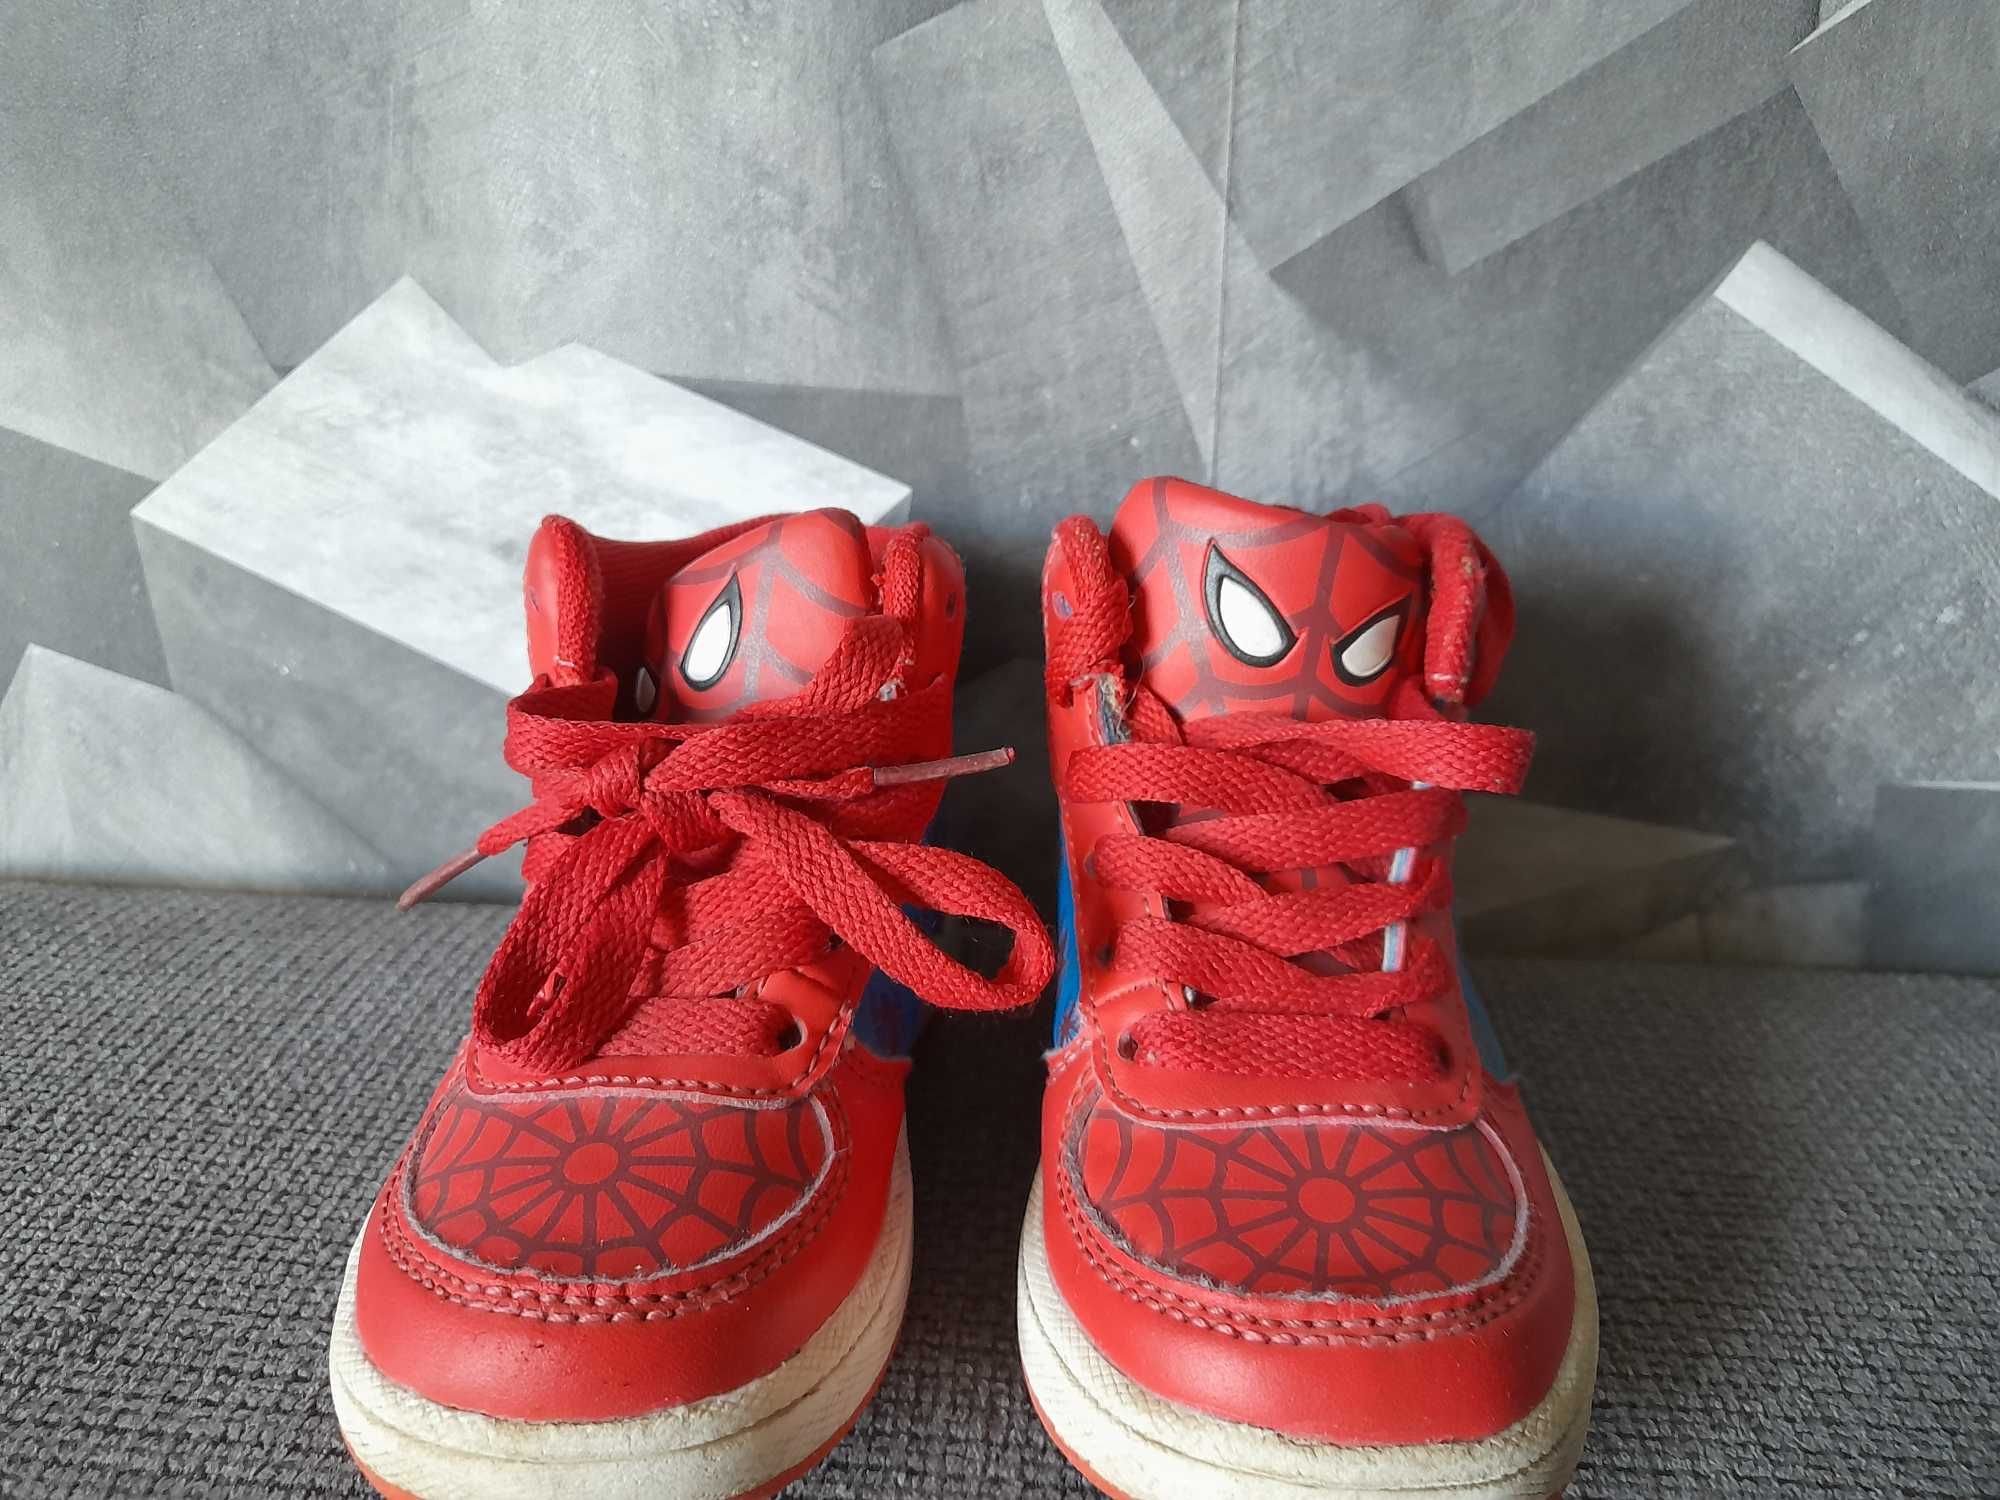 Buty chłopięce Spiderman